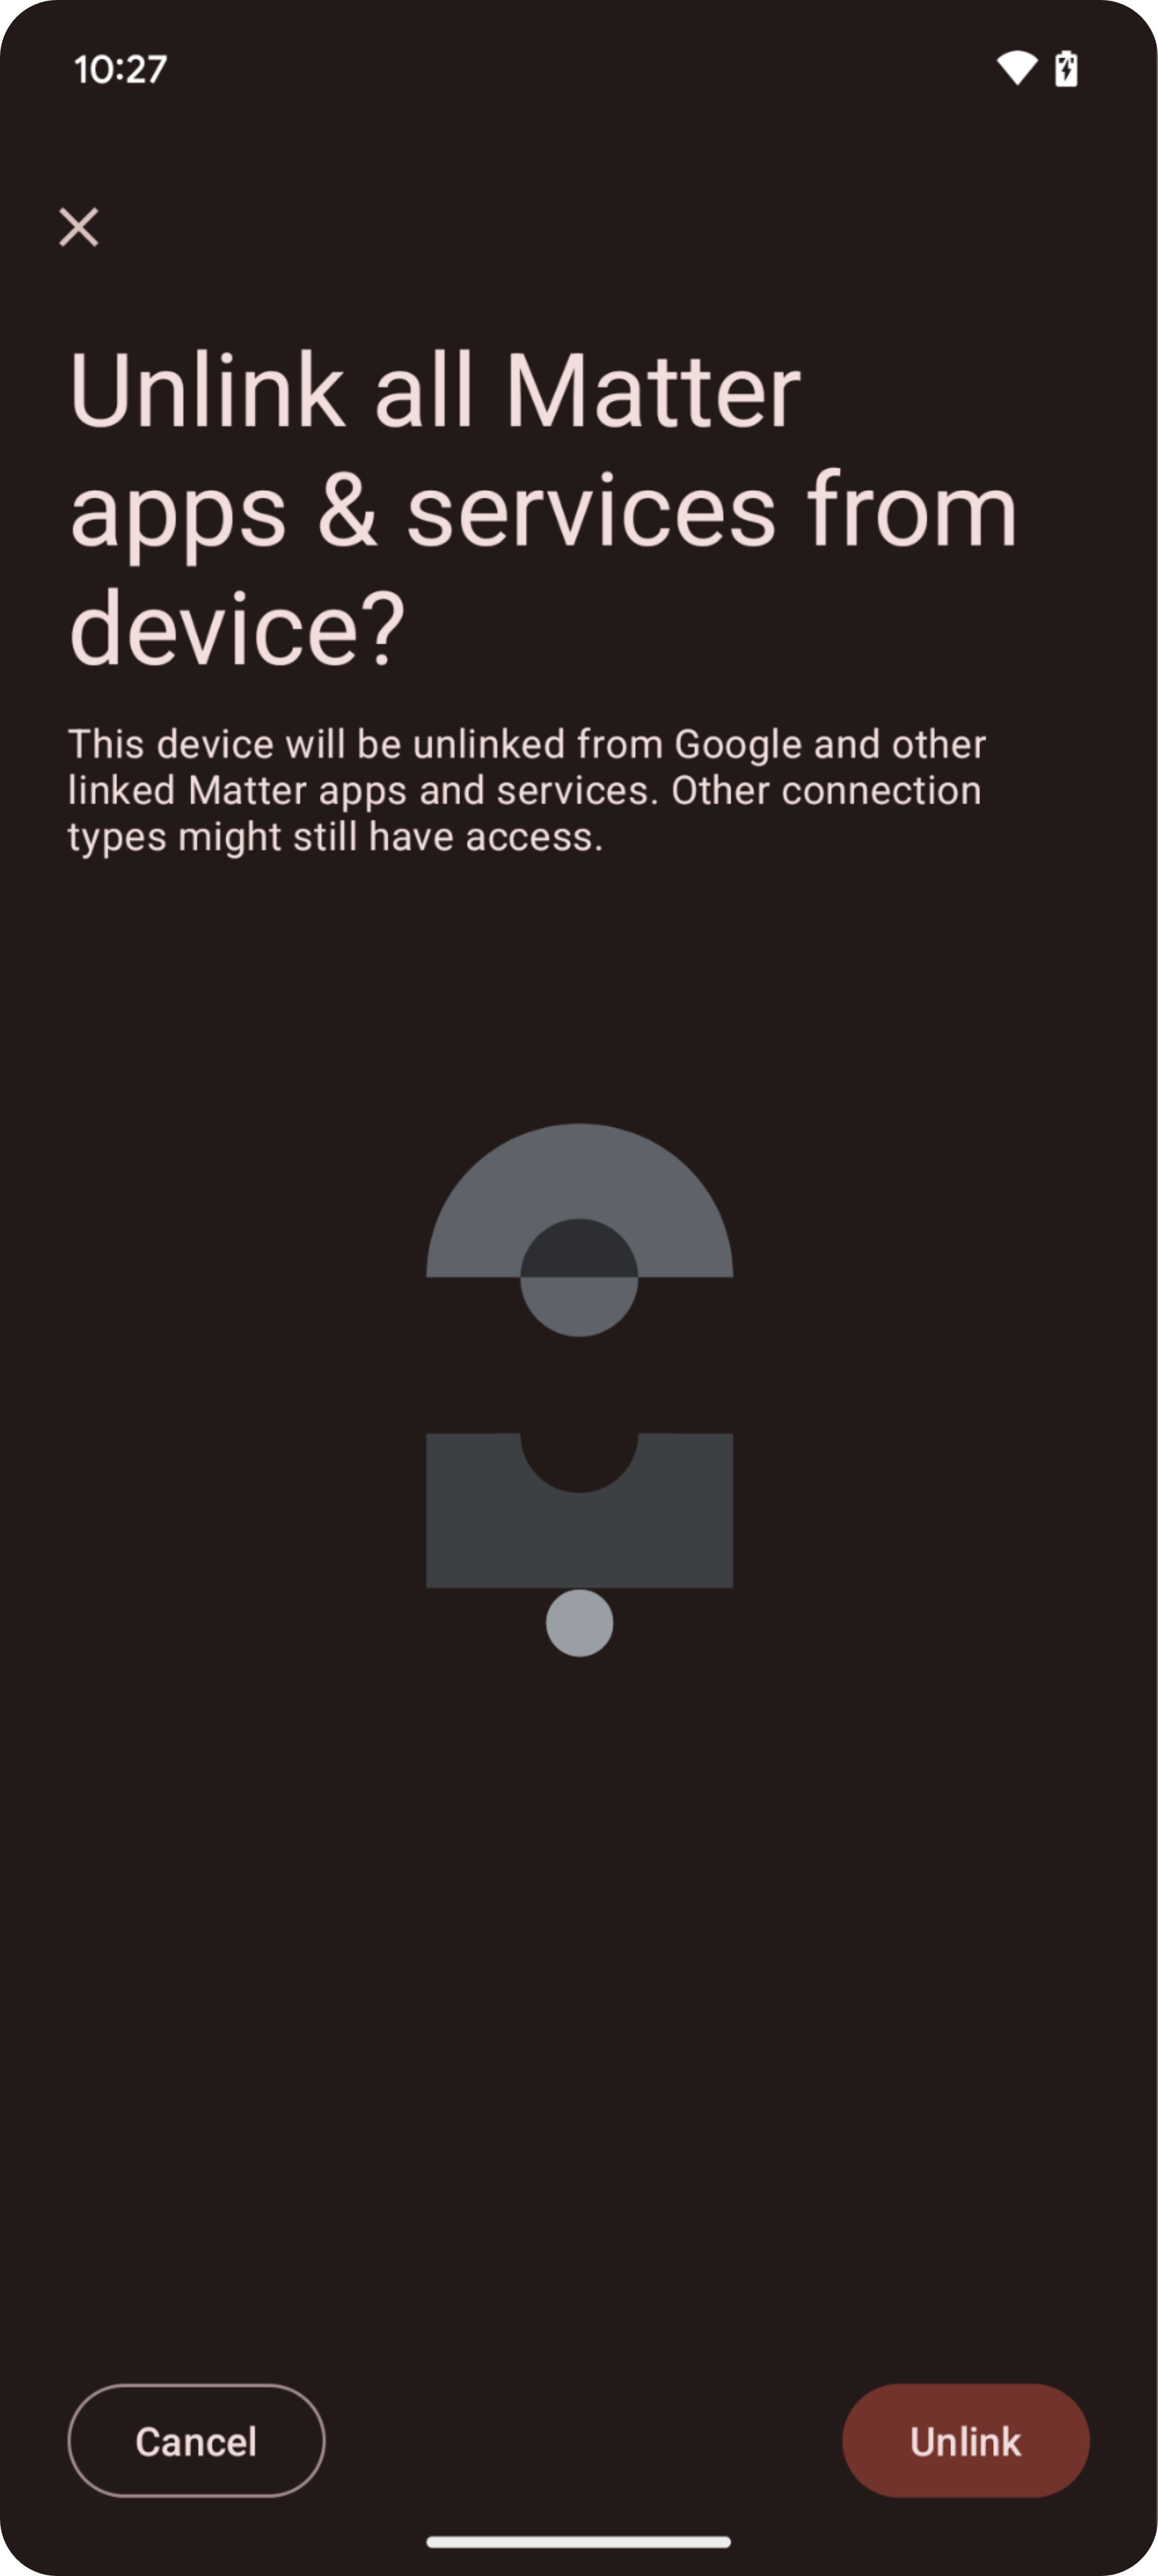 इस इमेज में, Google Home Playground में सुझाव/शिकायत/राय देने और समस्याओं की शिकायत करने के लिए आइकॉन दिखाए गए हैं.